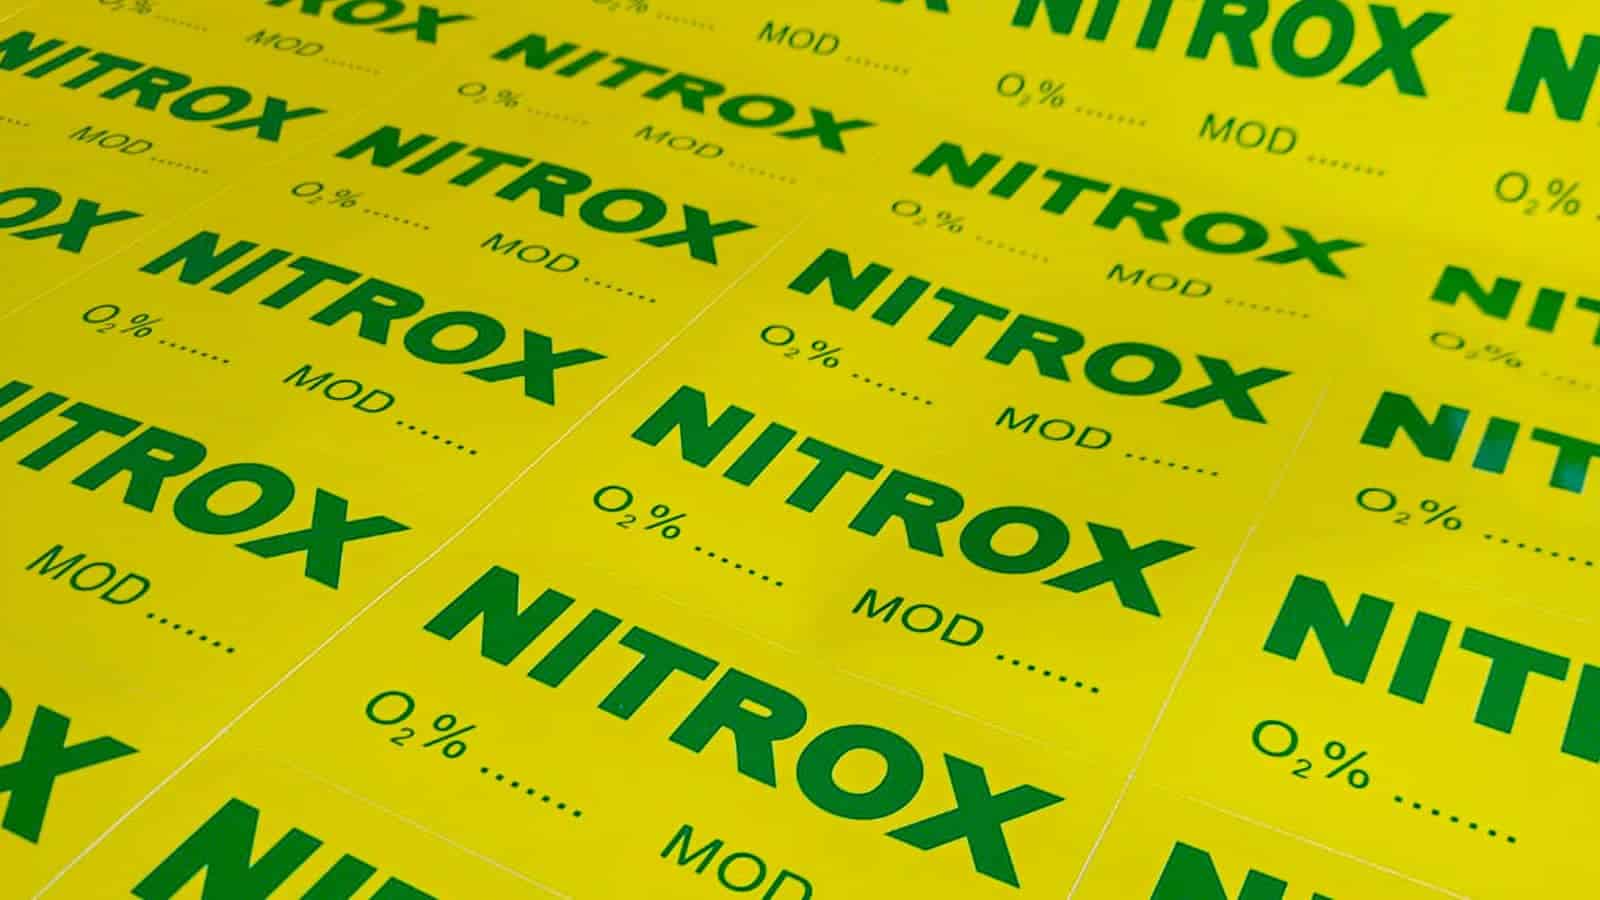 Jak obliczyć MOD dla nitroxu? 2szkoła nurkowania kraków